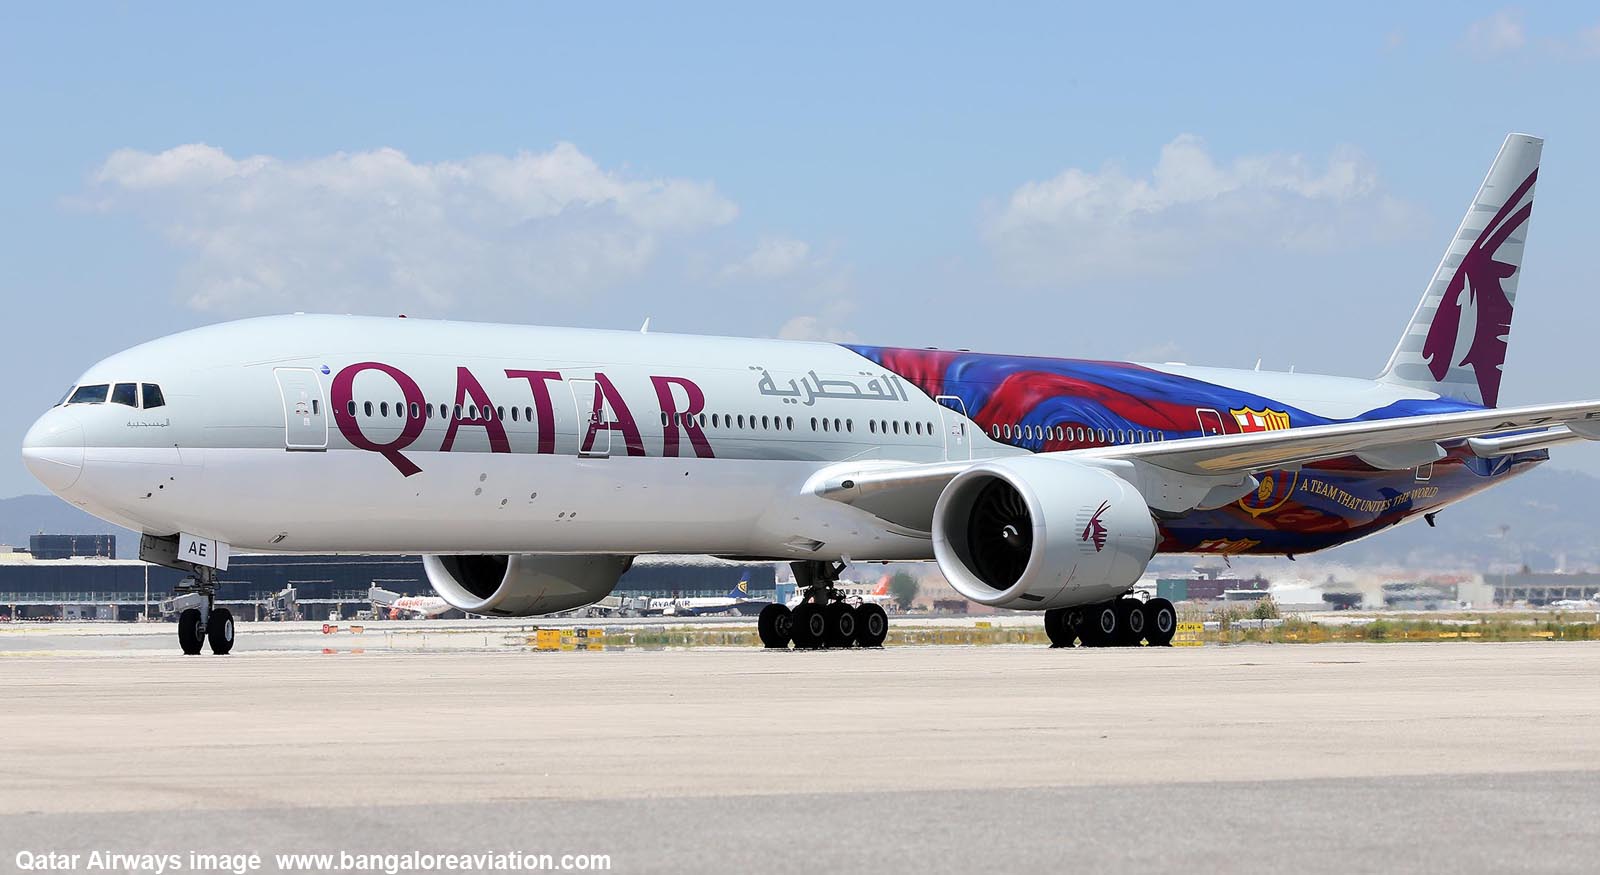 Engine Birdstrike Delays Qatar Airways Flight Bound For Doha